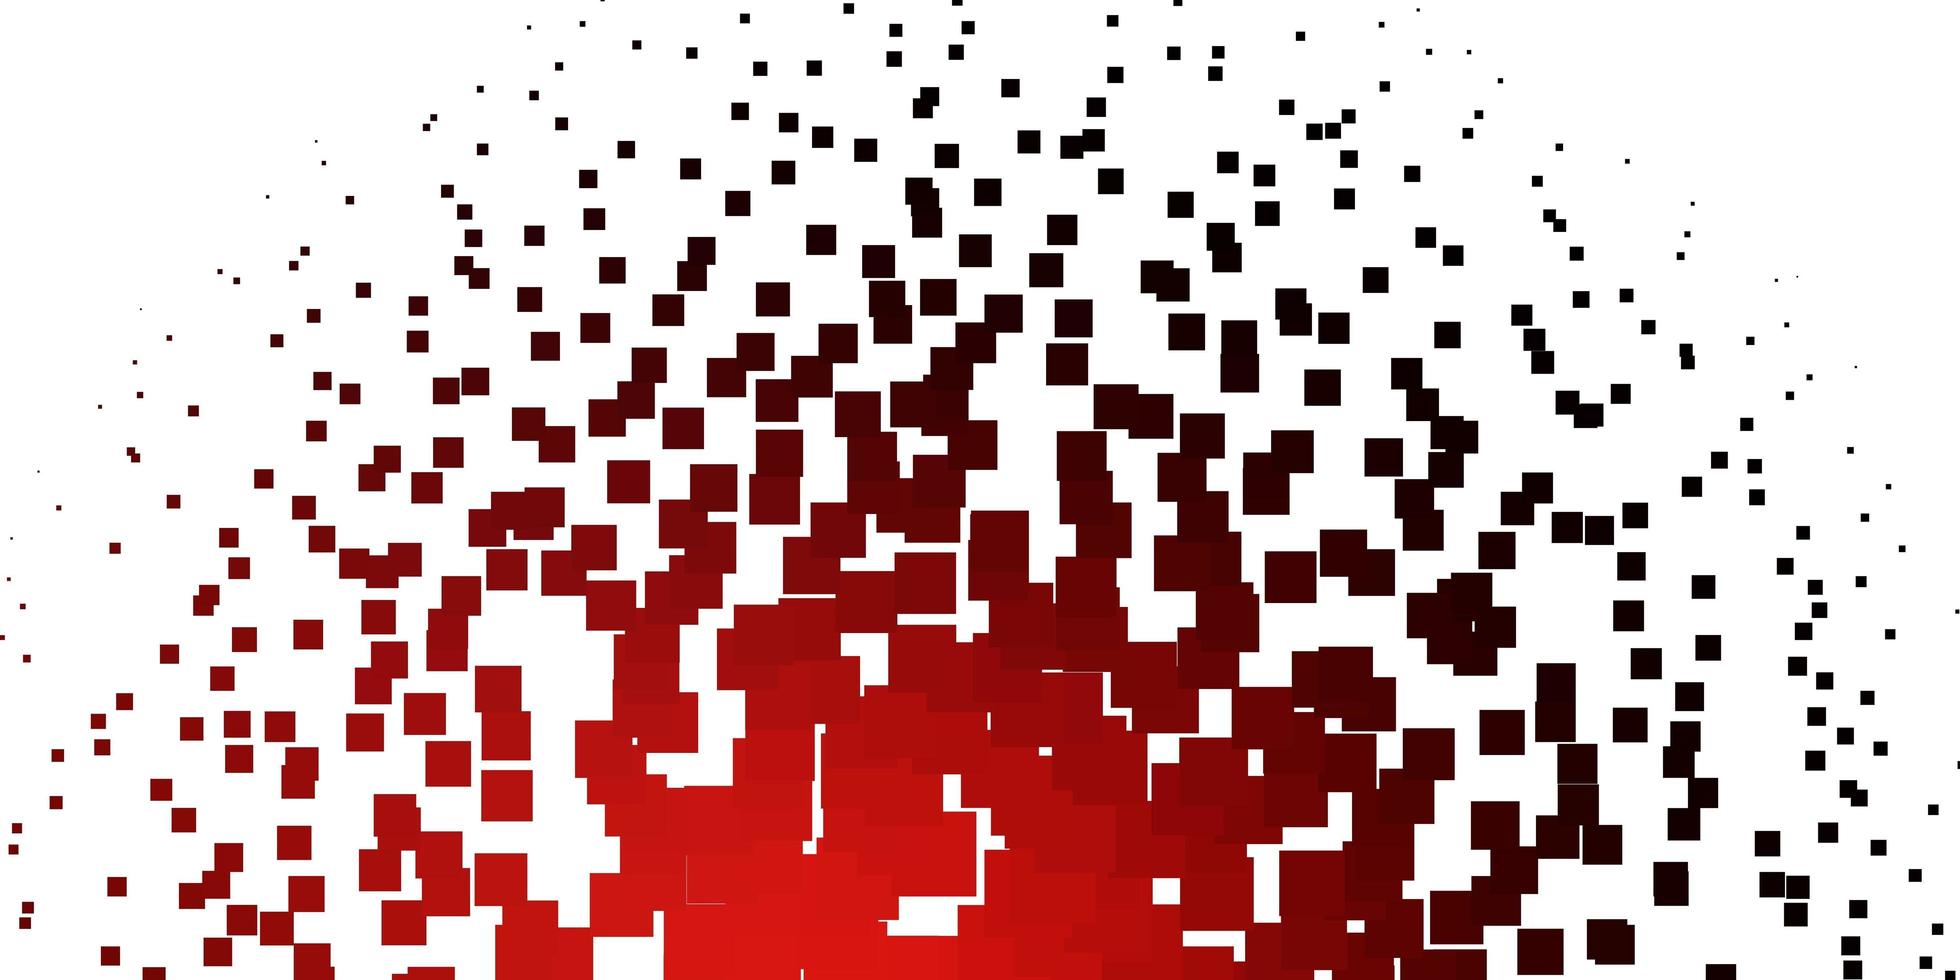 telón de fondo de vector rojo claro con rectángulos. Ilustración de degradado abstracto con rectángulos. diseño para la promoción de su negocio.